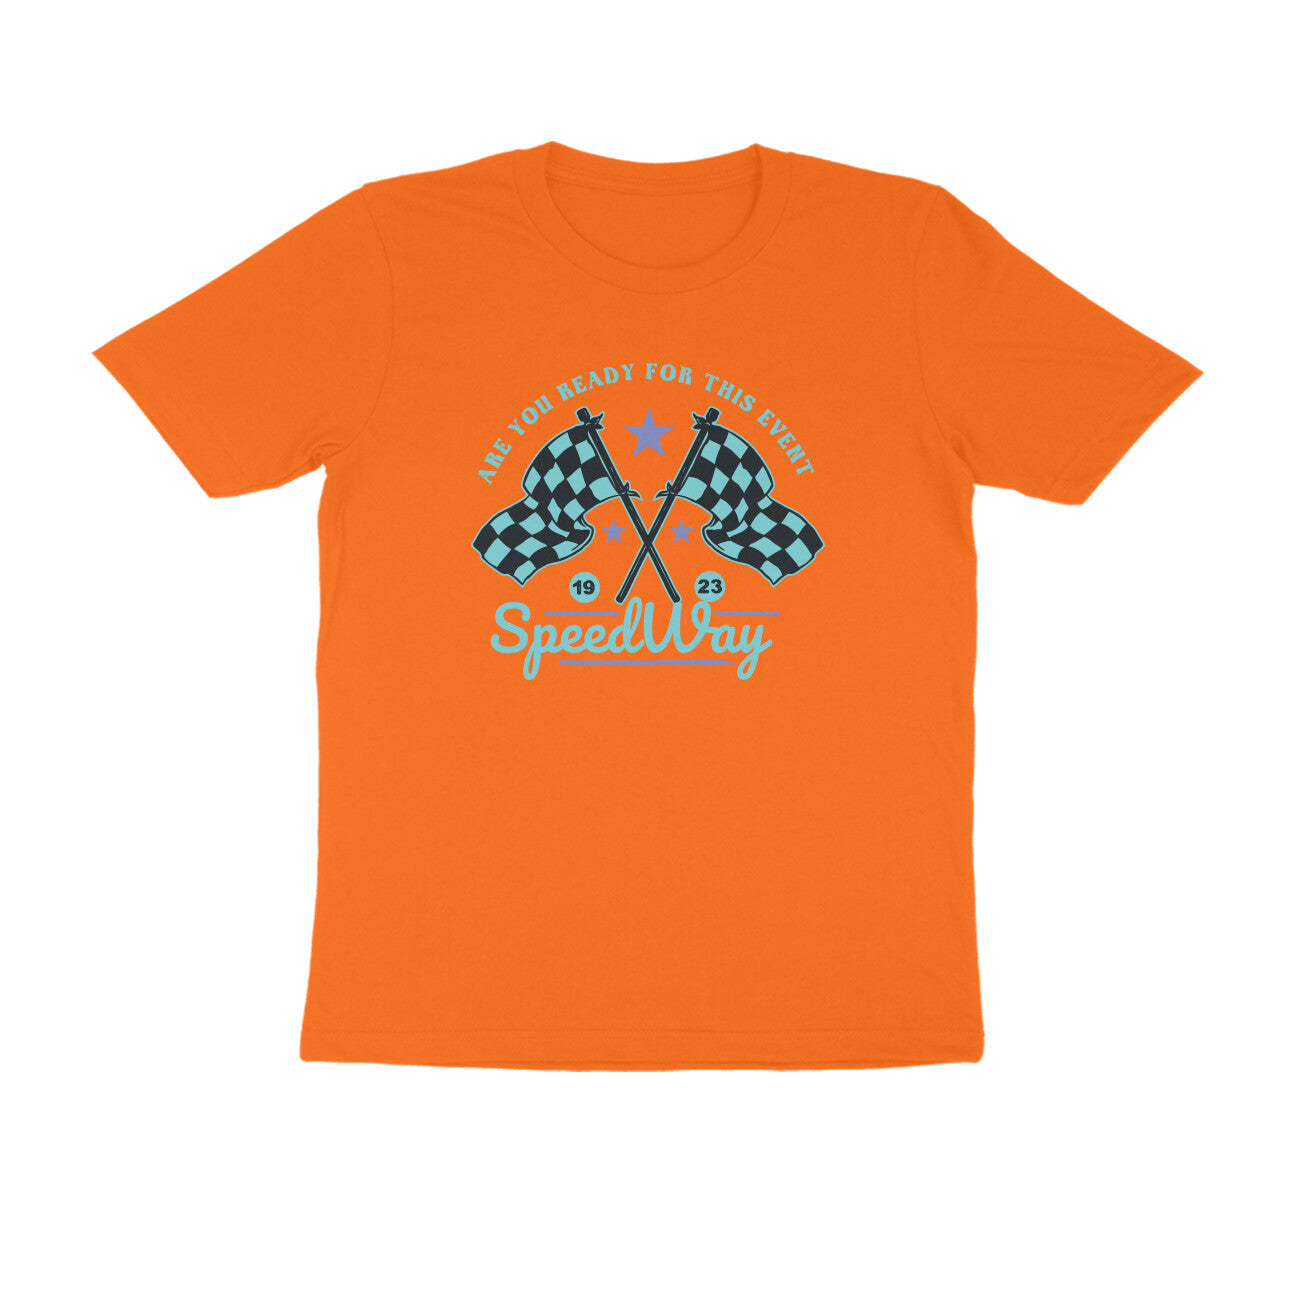 Half Sleeve Round Neck T-Shirt – Speedway 3 puraidoprints